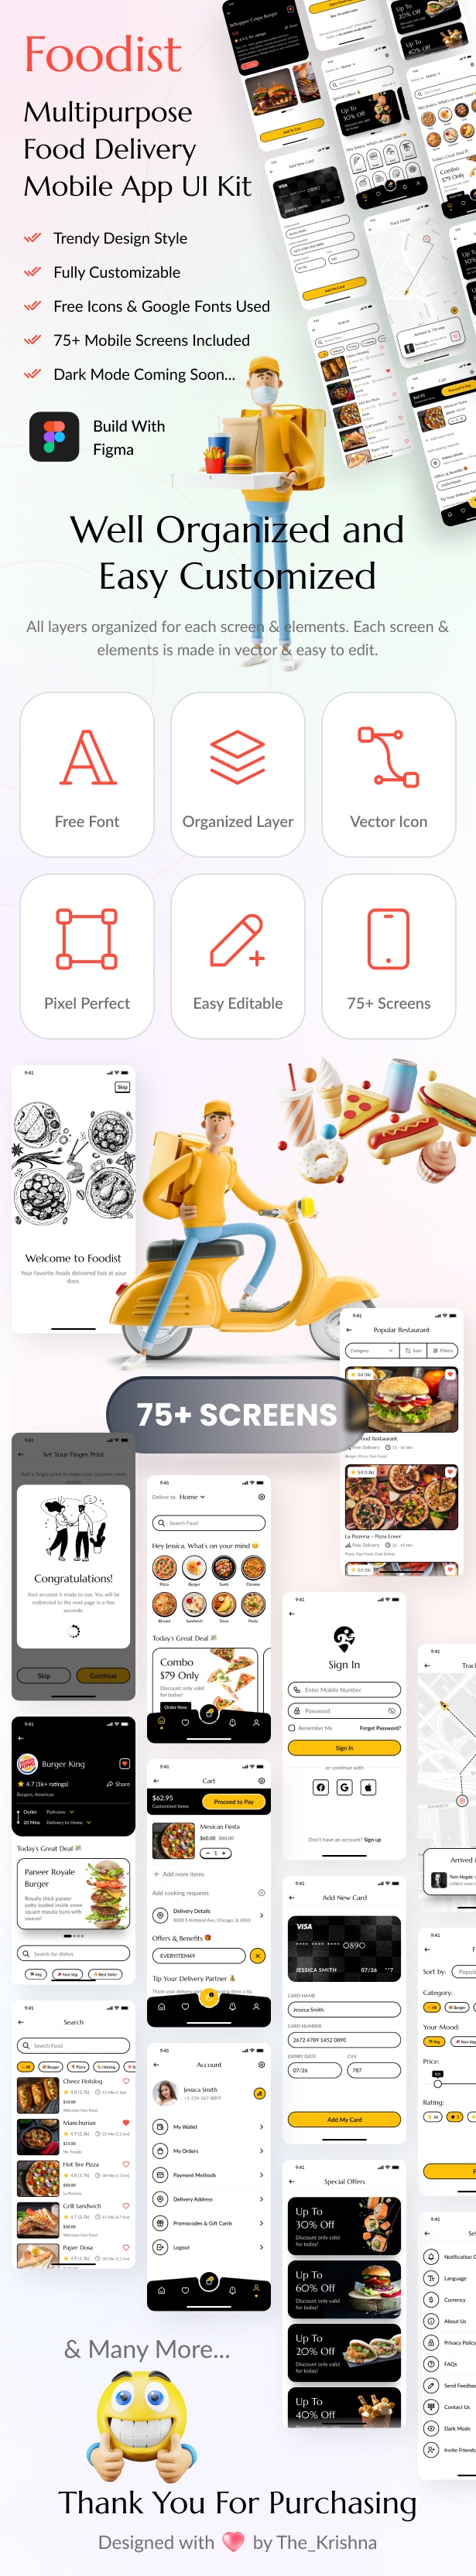 Multipurpose Food Delivery Mobile App UI Kit Figma Template - Foodist - 1